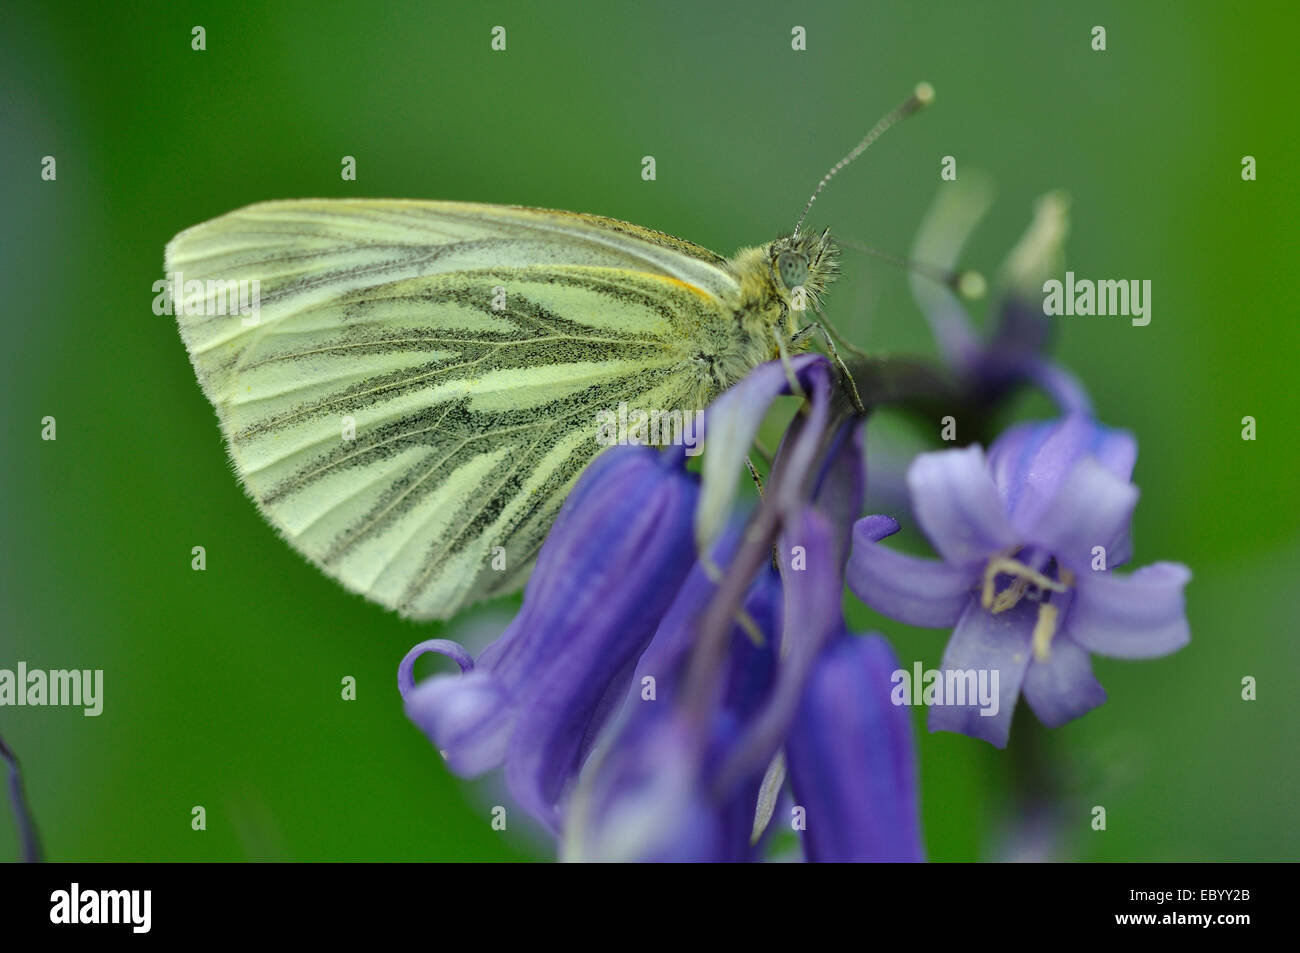 Papillon blanc veiné de vert au repos sur fleur bluebell Banque D'Images